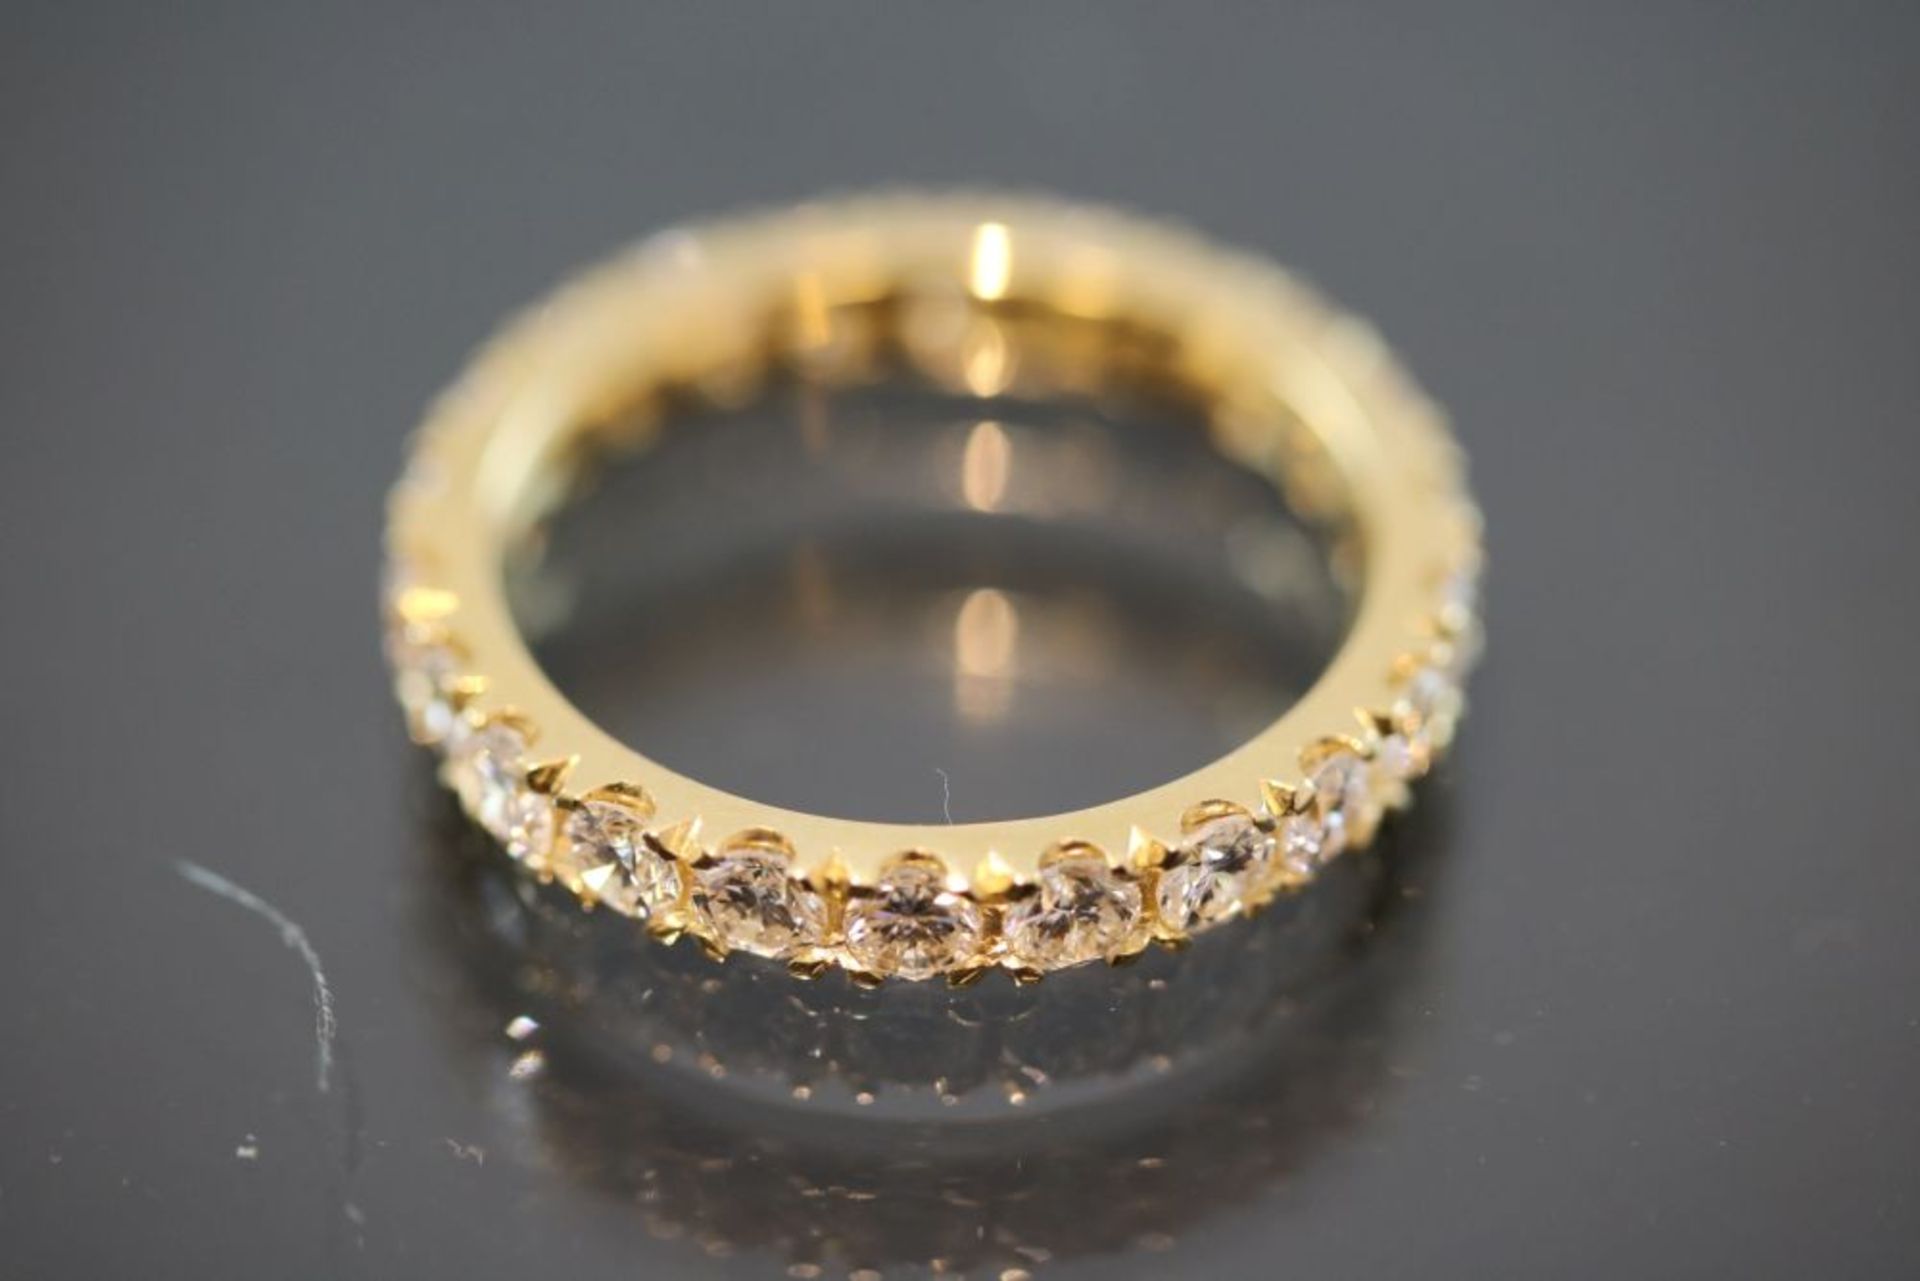 Brillant-Ring, 750 Gelbgold4 Gramm 21 Brillanten, 1,94 ct., w/si. Ringgröße: 55Schätzpreis: 6000,- -